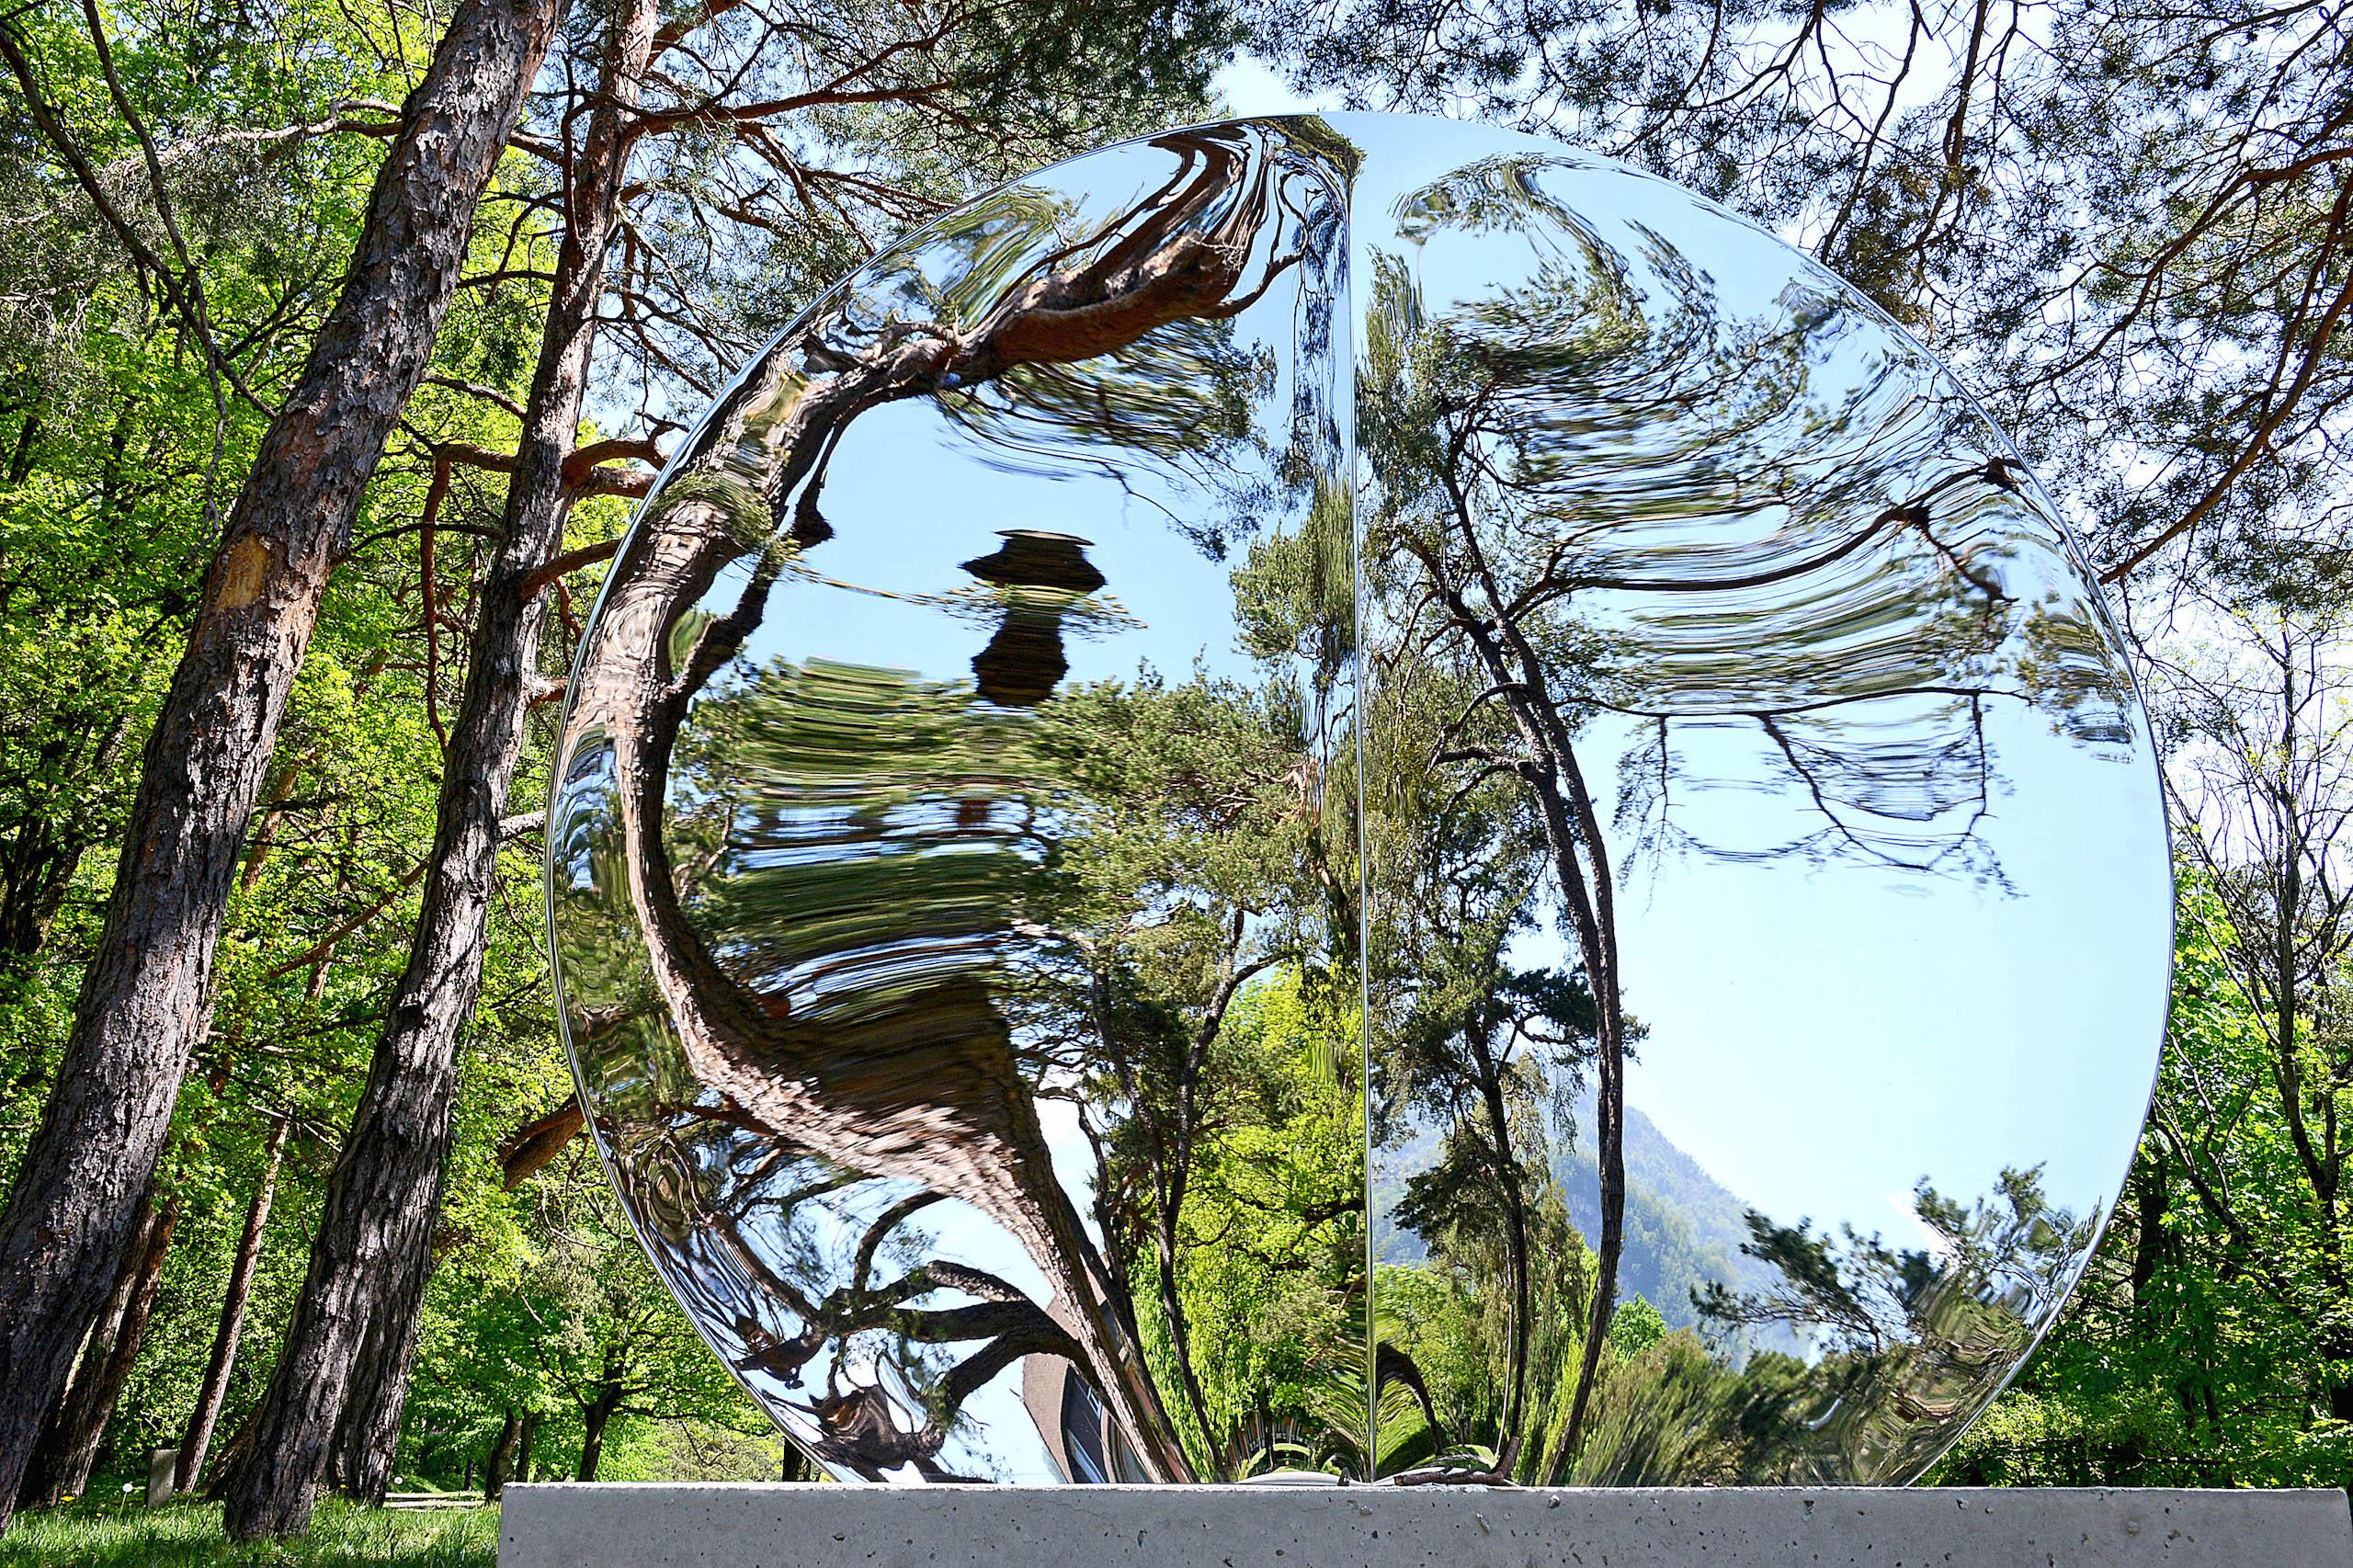 Mirror "with fold" 148 est une sculpture unique en acier inoxydable poli miroir et socle en béton de l'artiste contemporain Franck K, dont les dimensions sont 168 × 148 × 60 cm (66,1 × 58,3 × 23,6 in). 
La sculpture est signée et accompagnée d'un